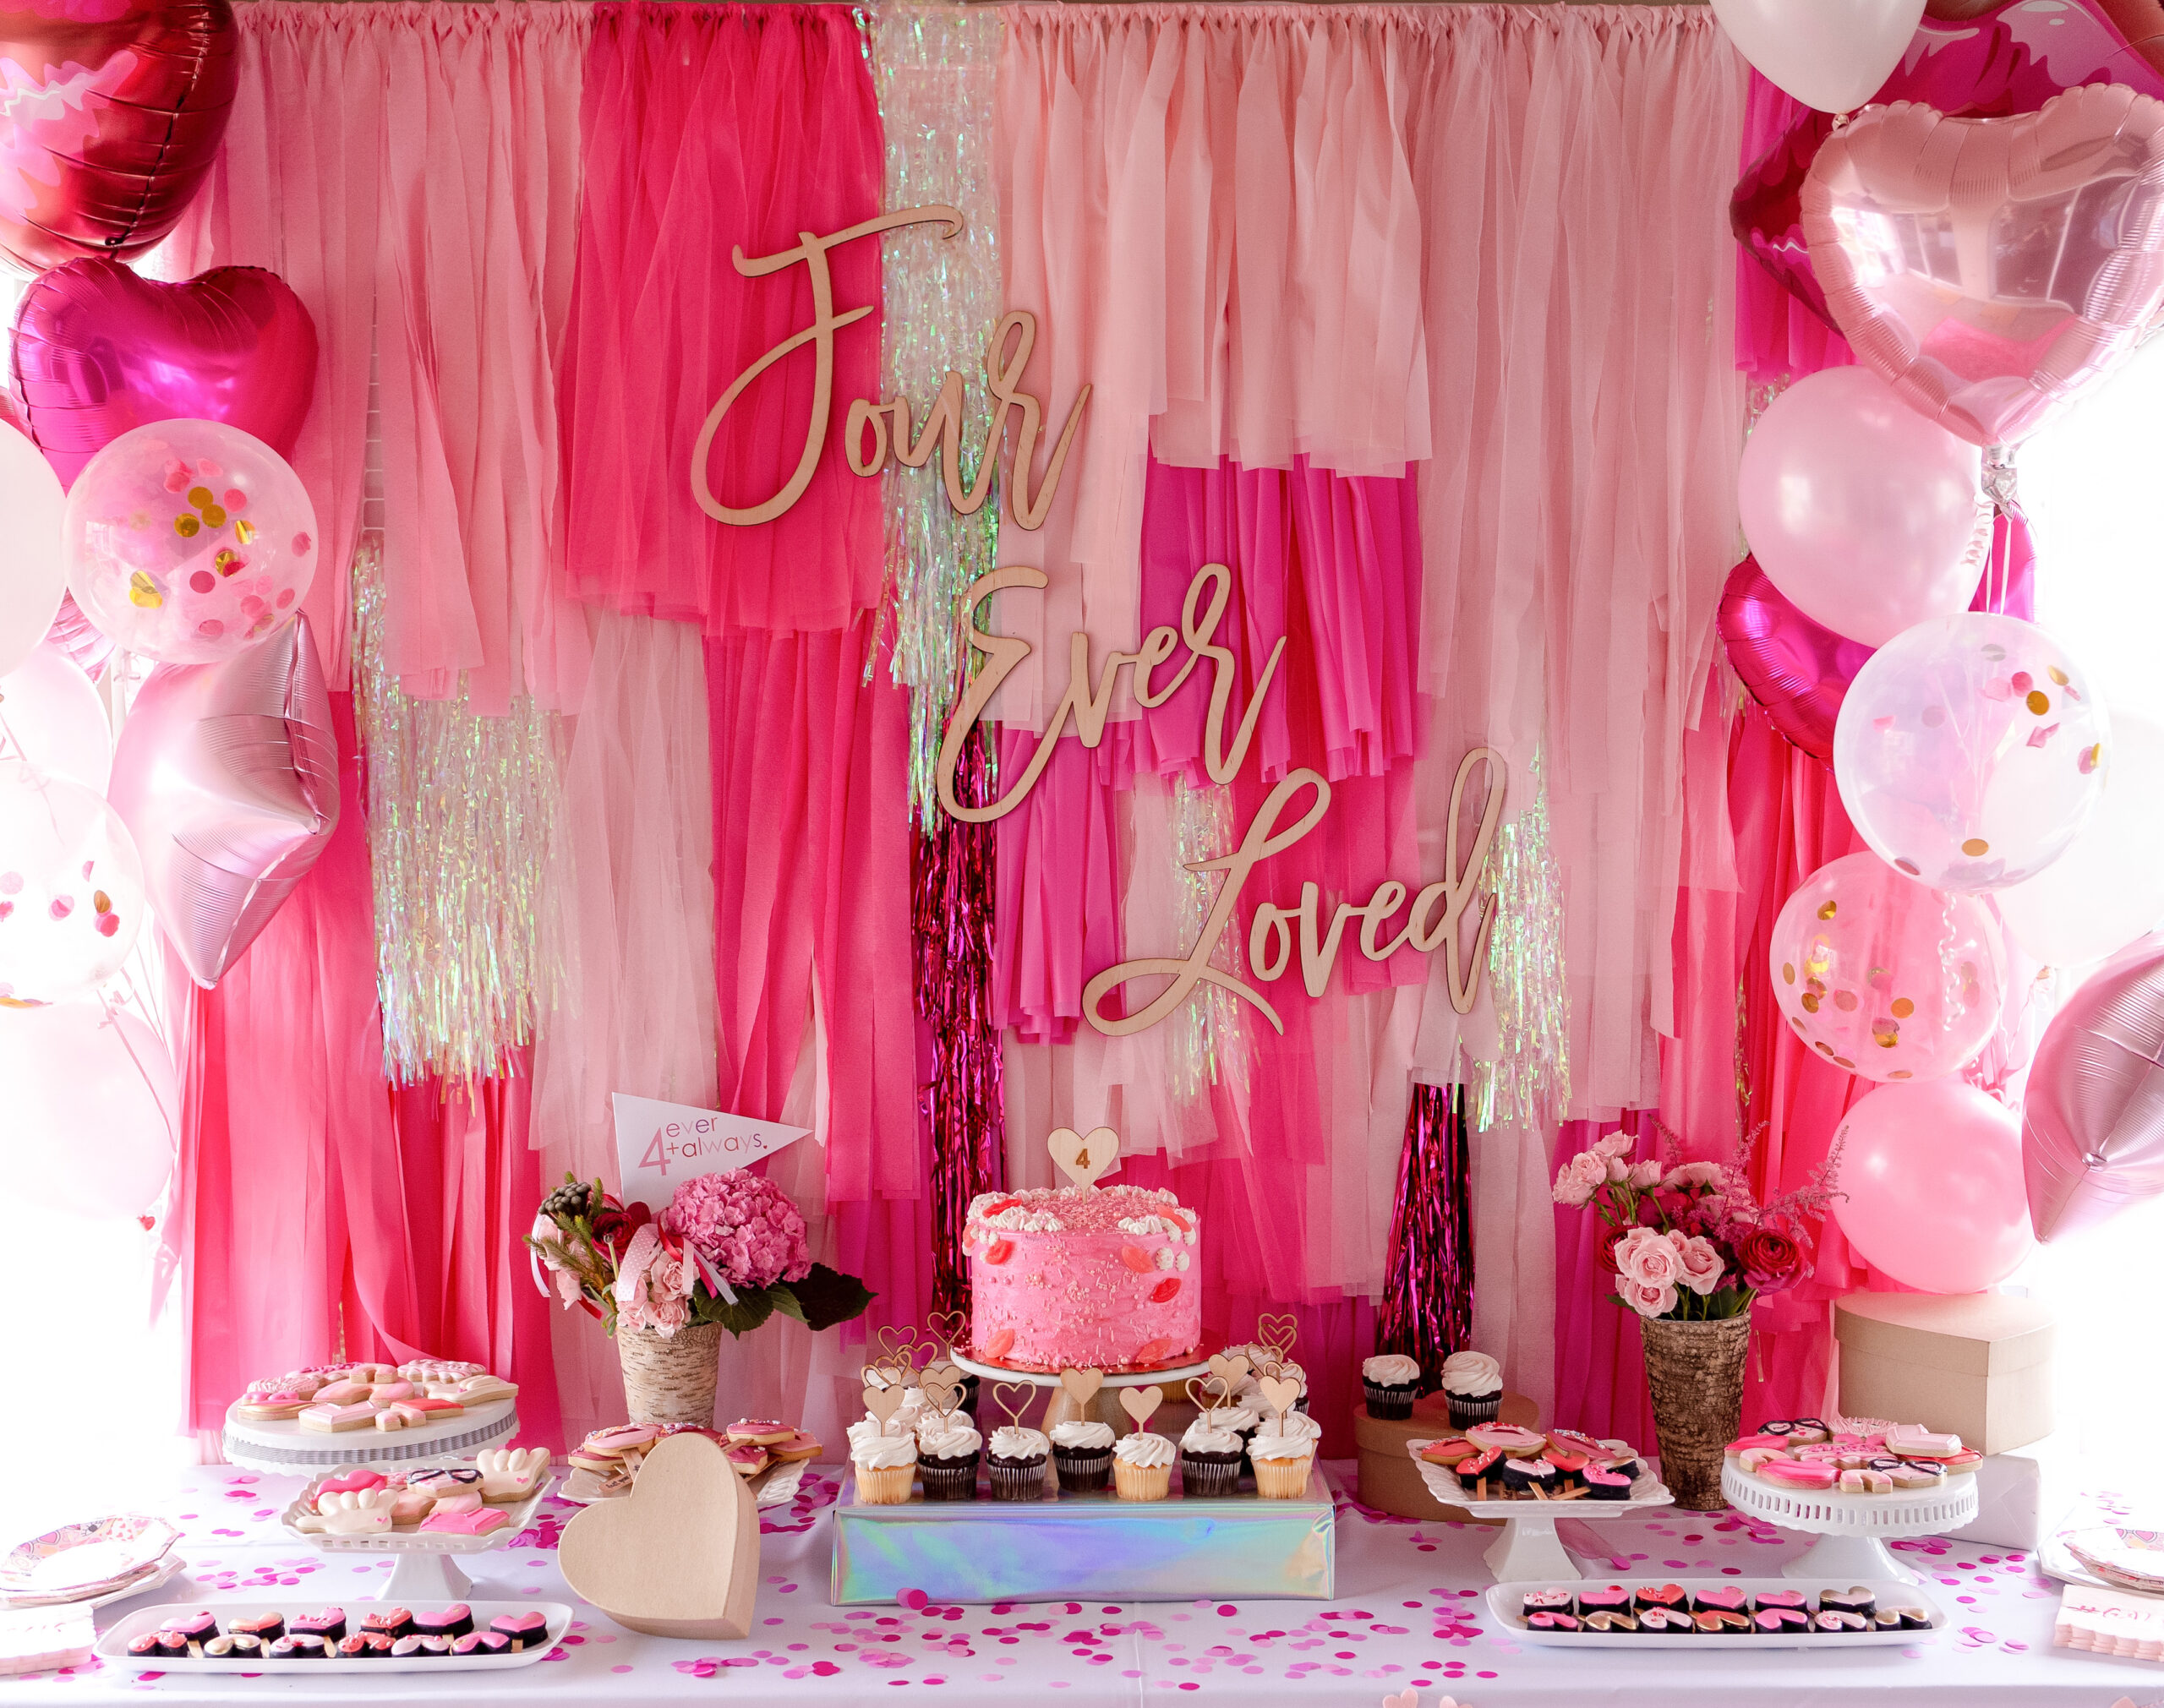 Bright pink fringe backdrop for Dessert table. 